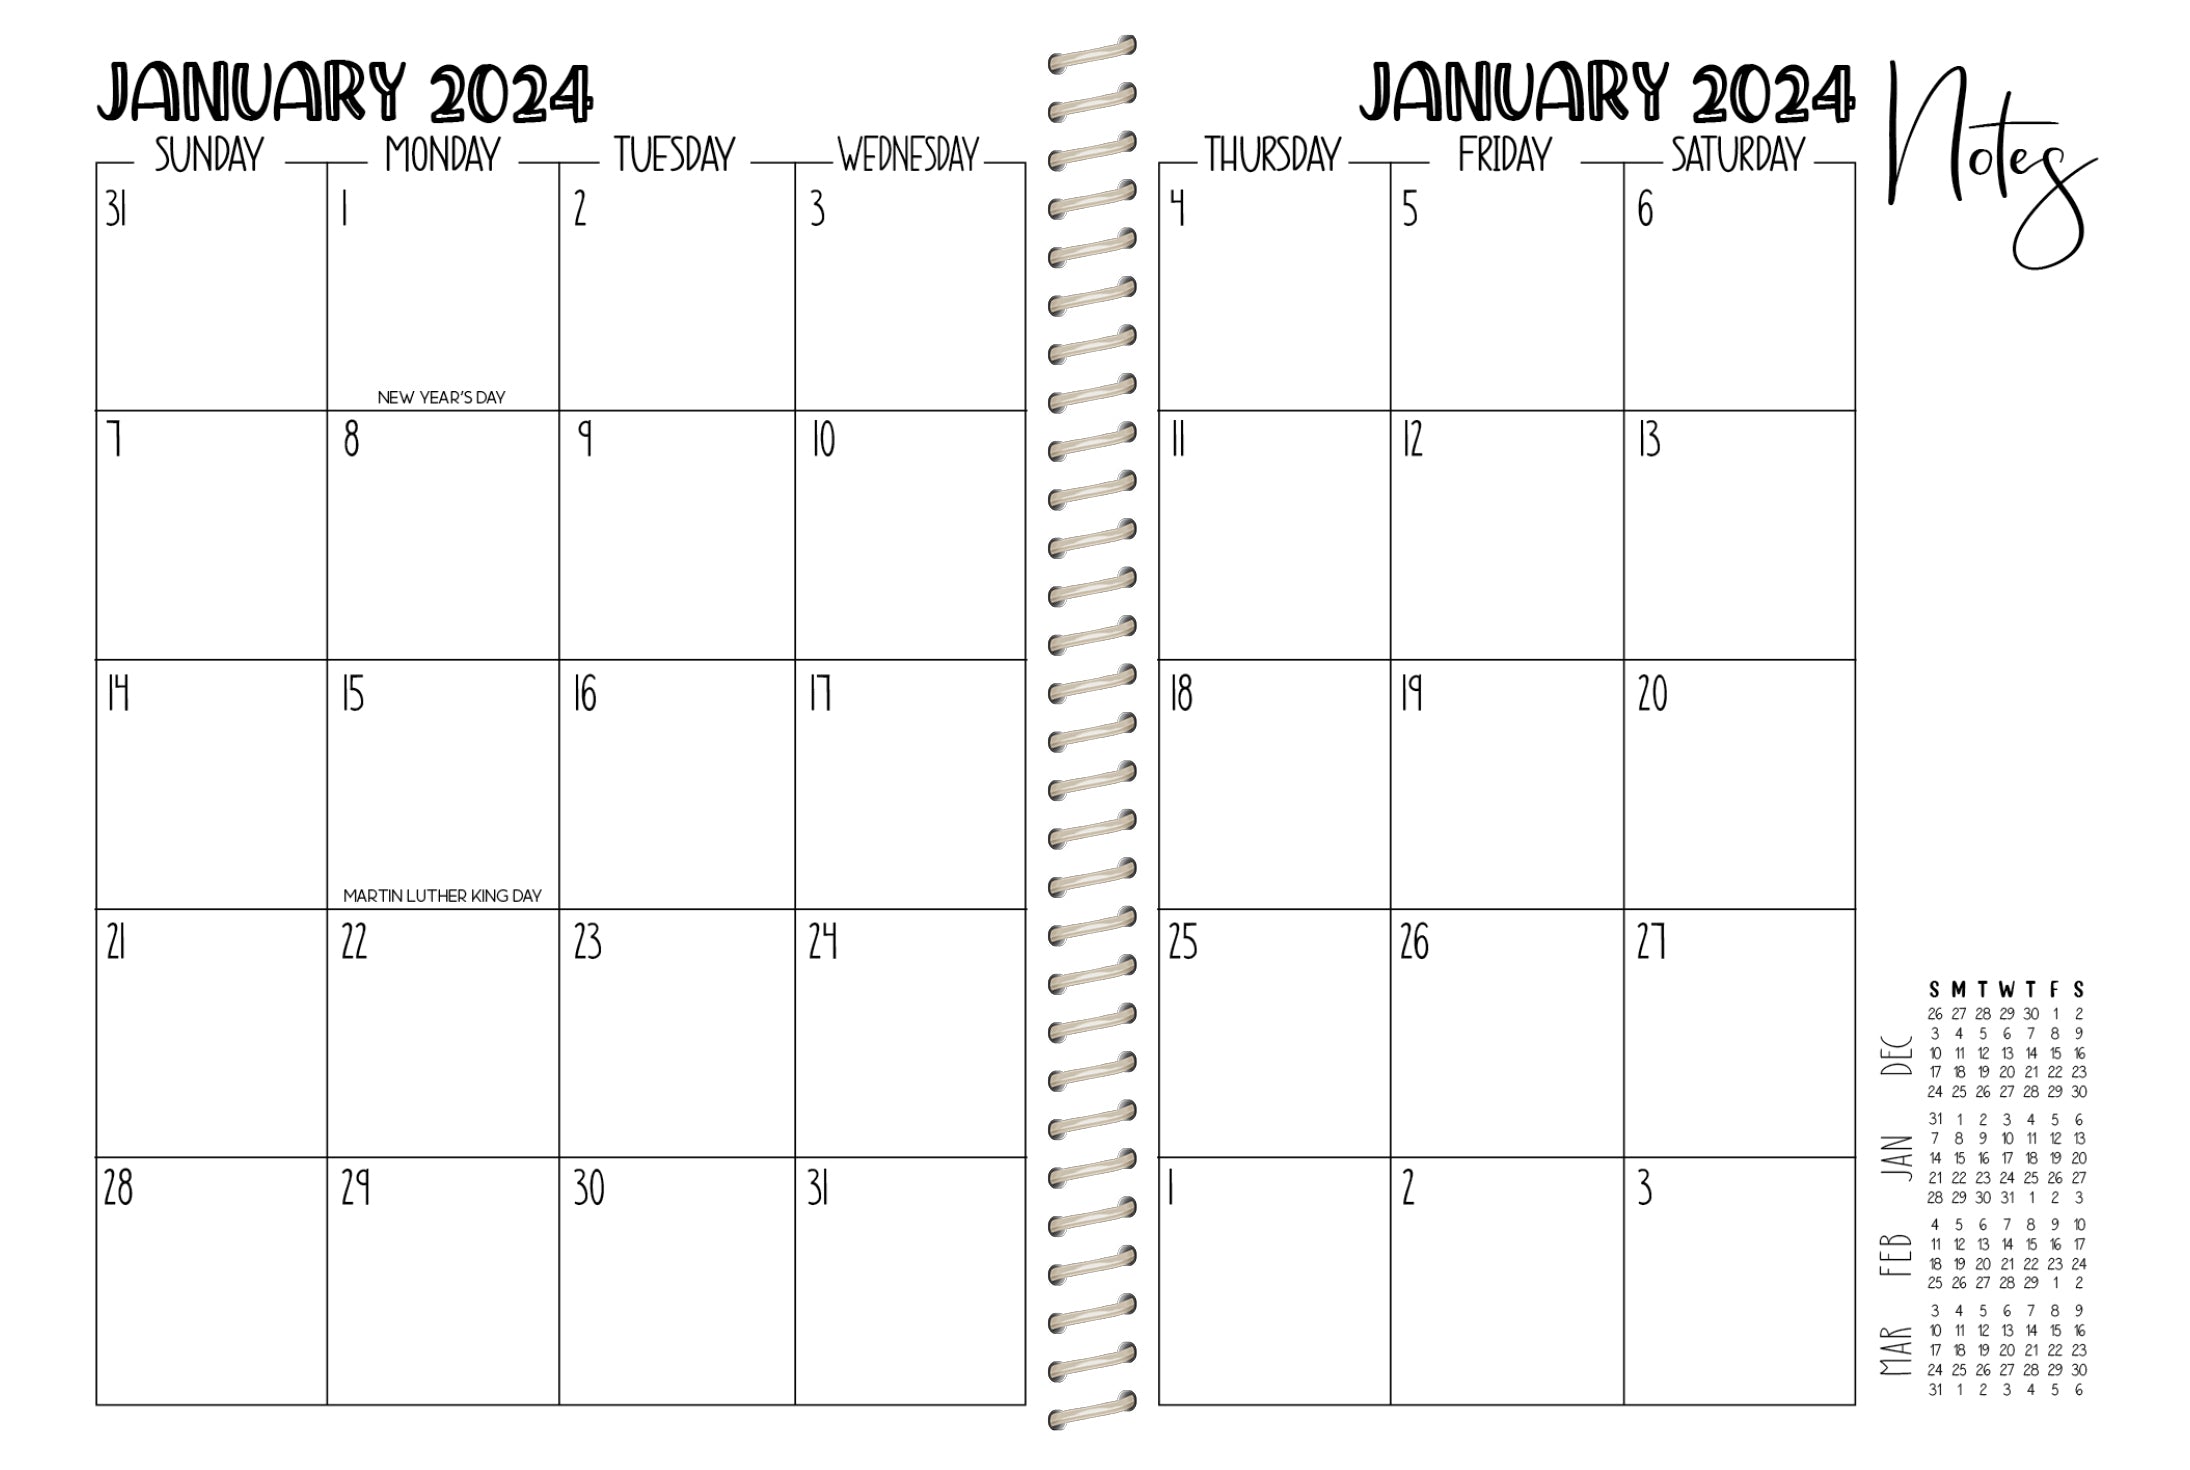 2024 Printed Weekly Planner - RUSTIC BLACK COWHIDE